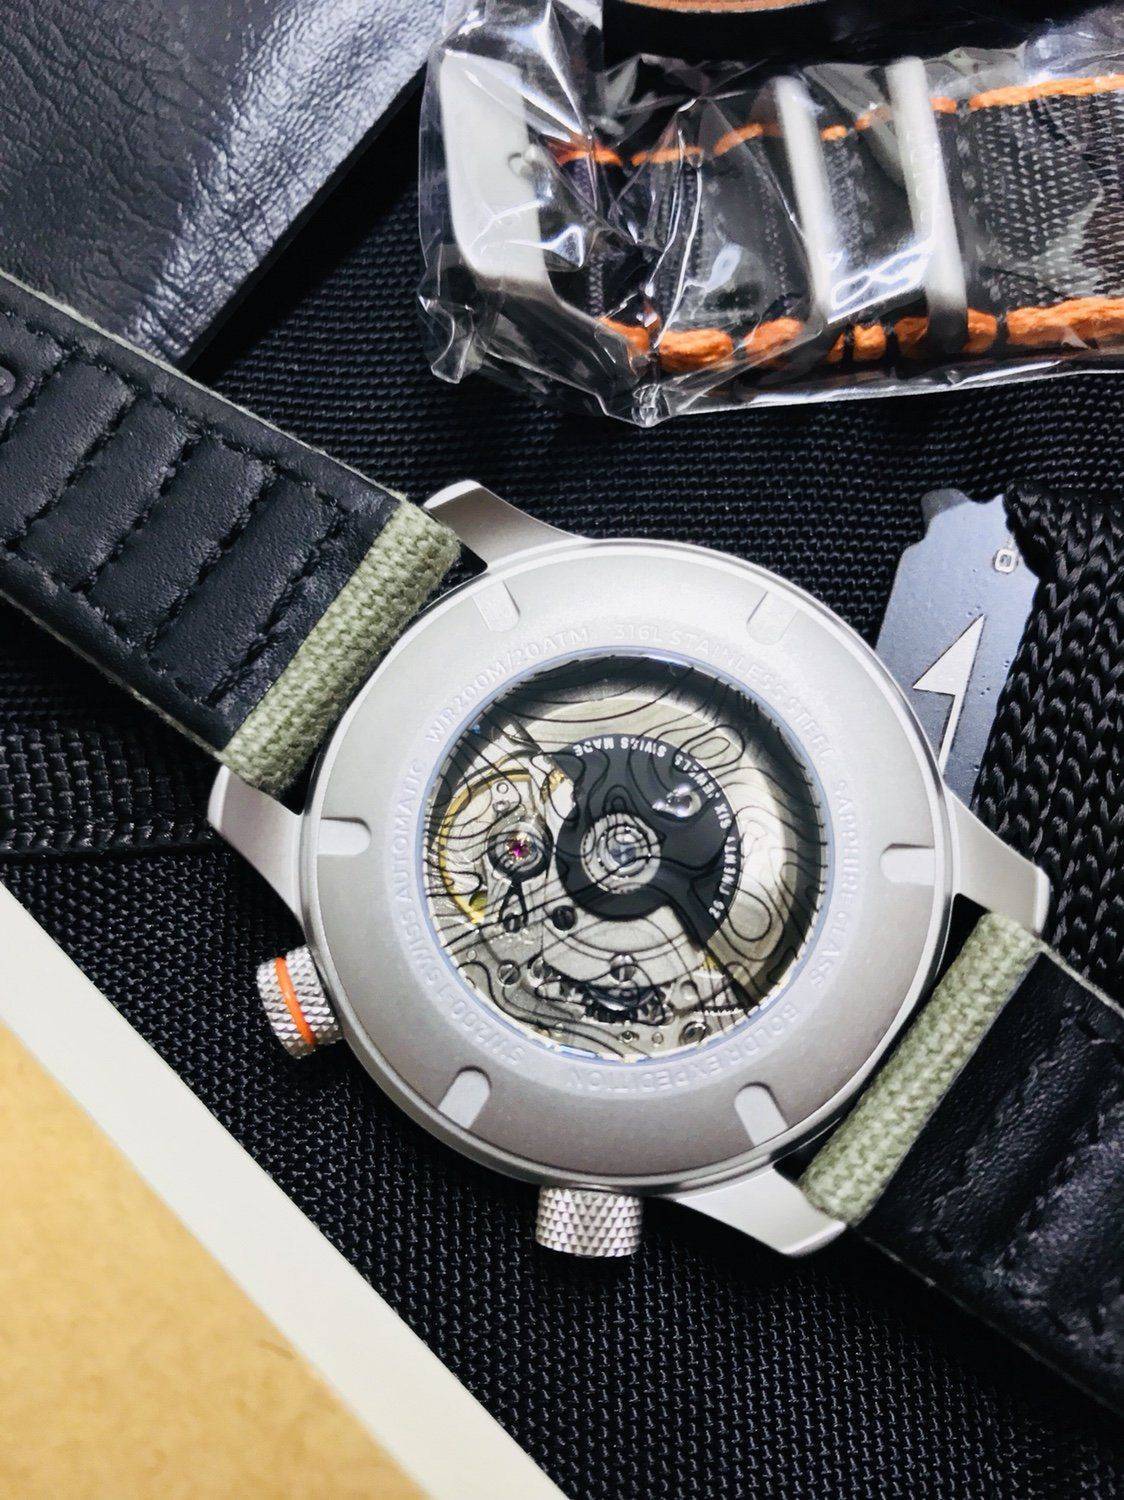 Presentación exprés! Boldr Expedition -Rushmore | Relojes Especiales, EL  foro de relojes